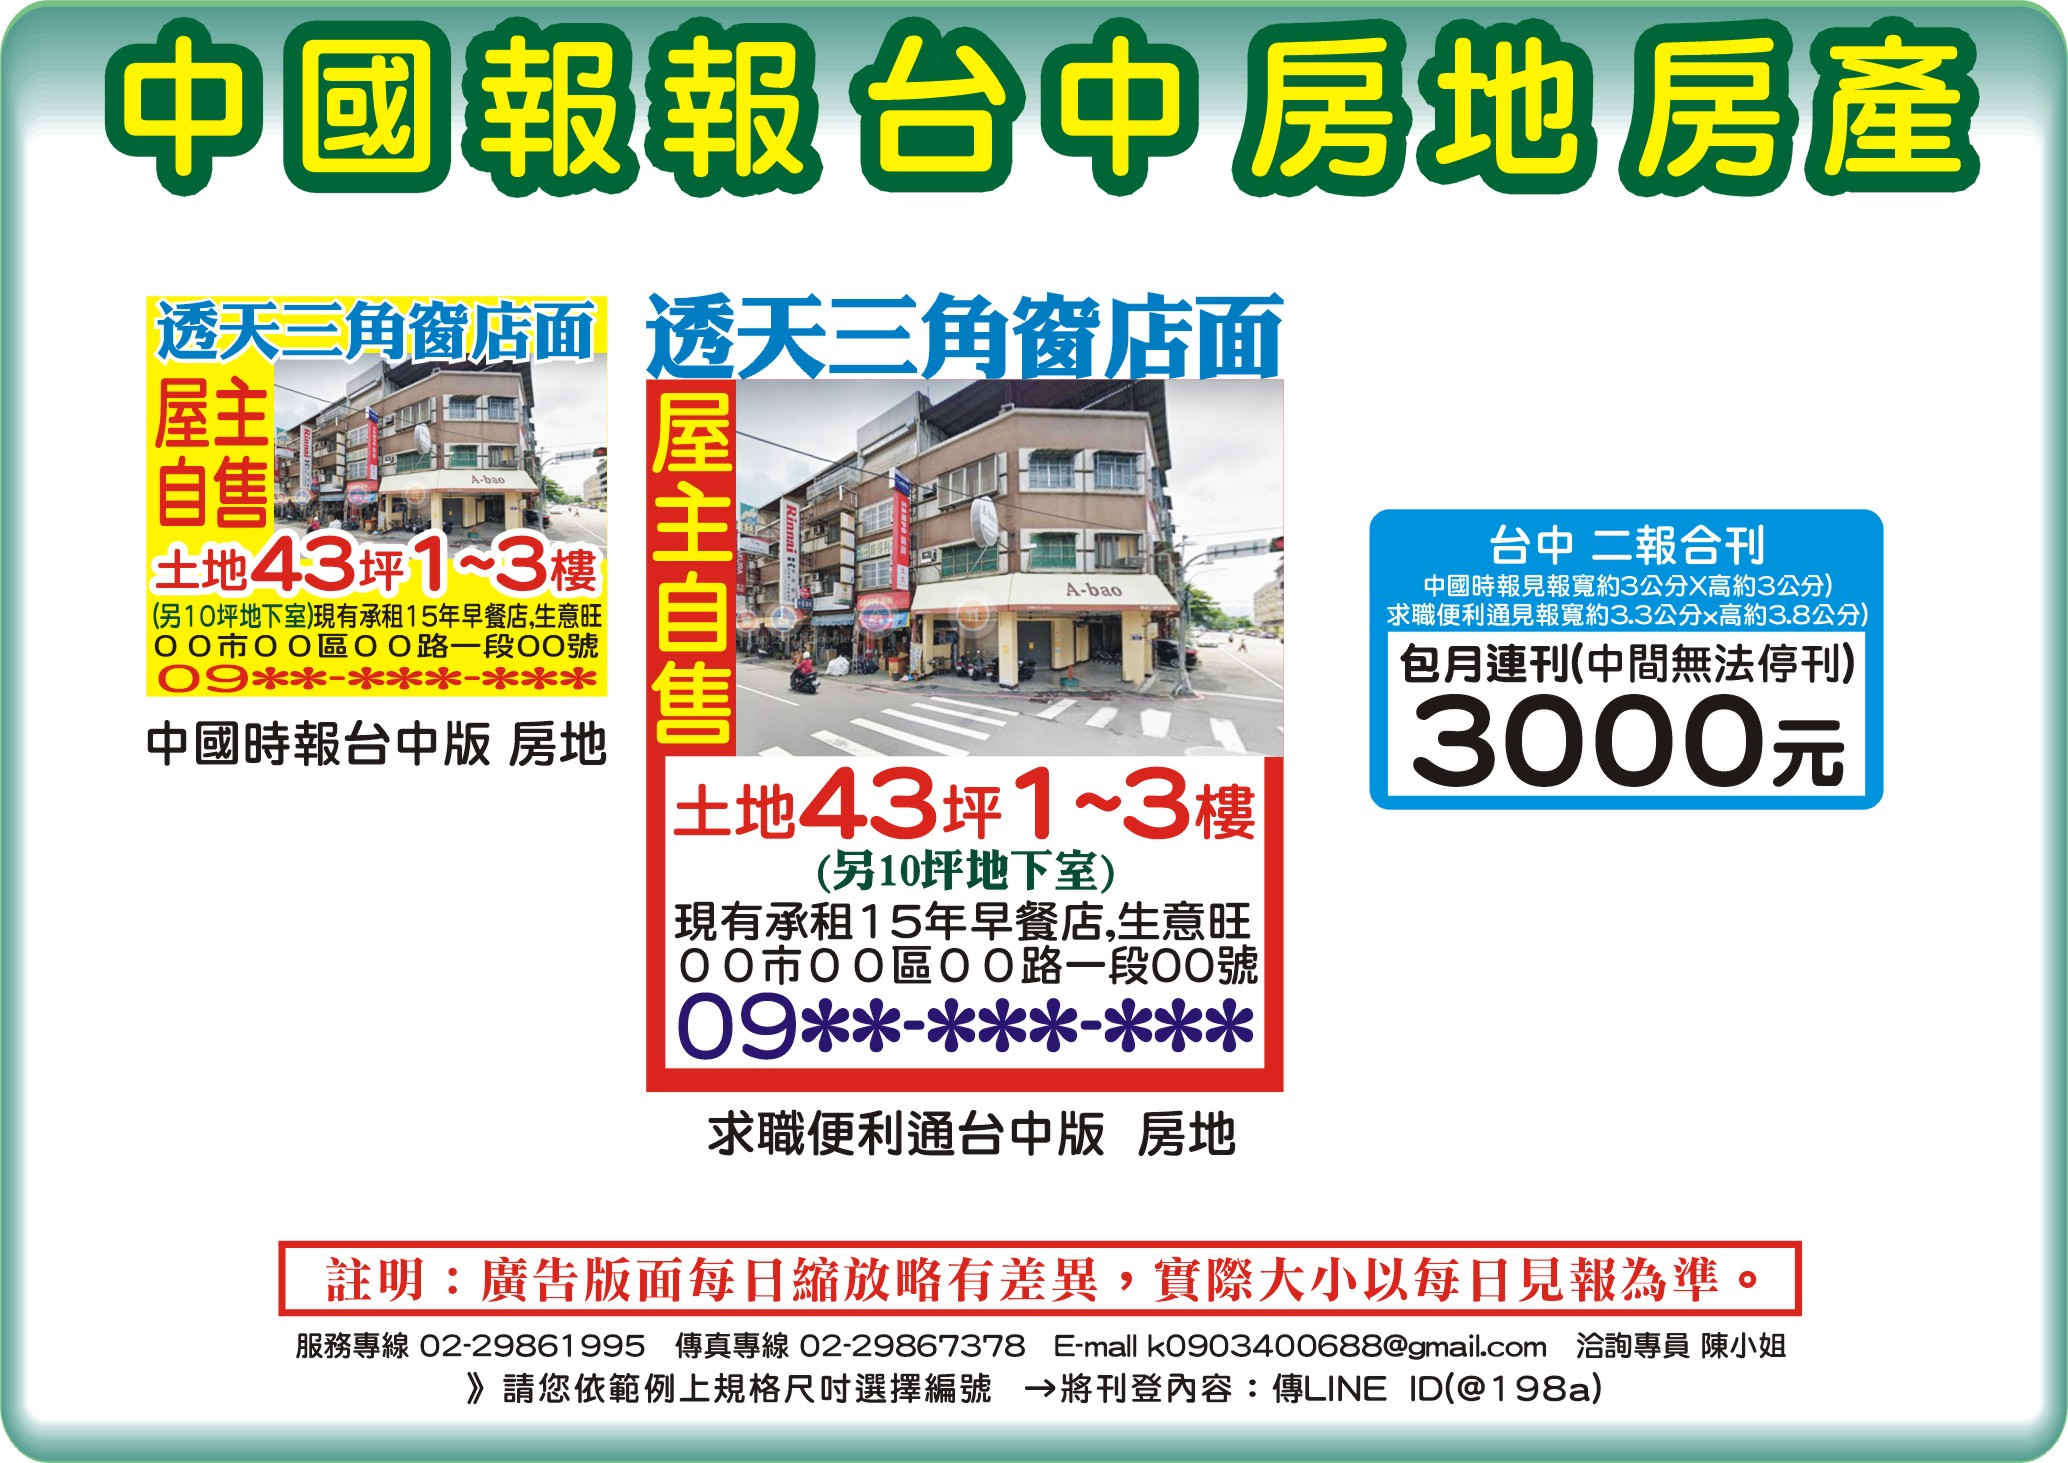 中國時報-房地房產-台中-說明報價範例圖片